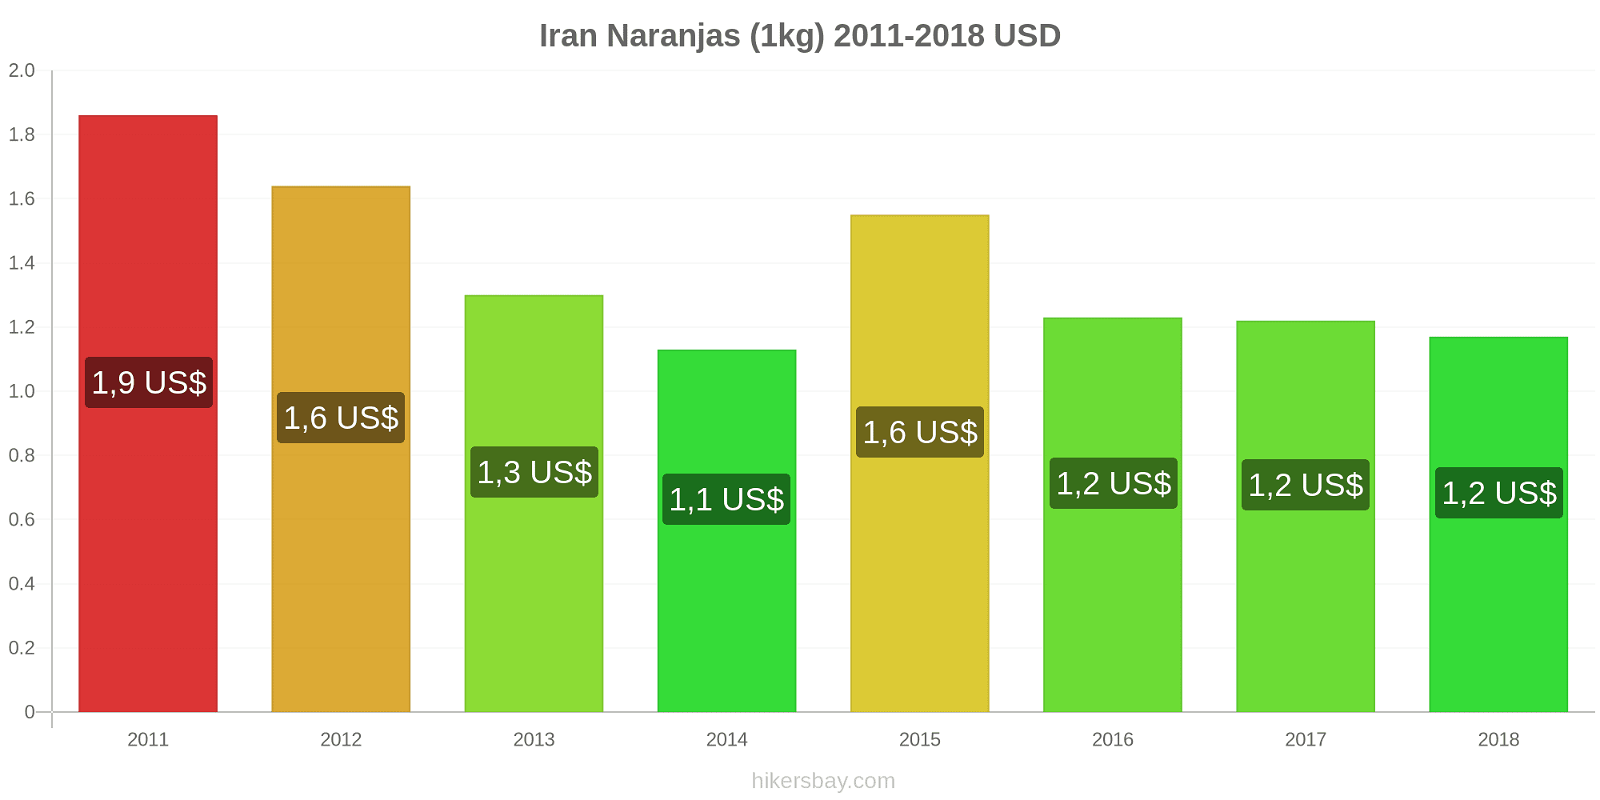 Iran cambios de precios Naranjas (1kg) hikersbay.com